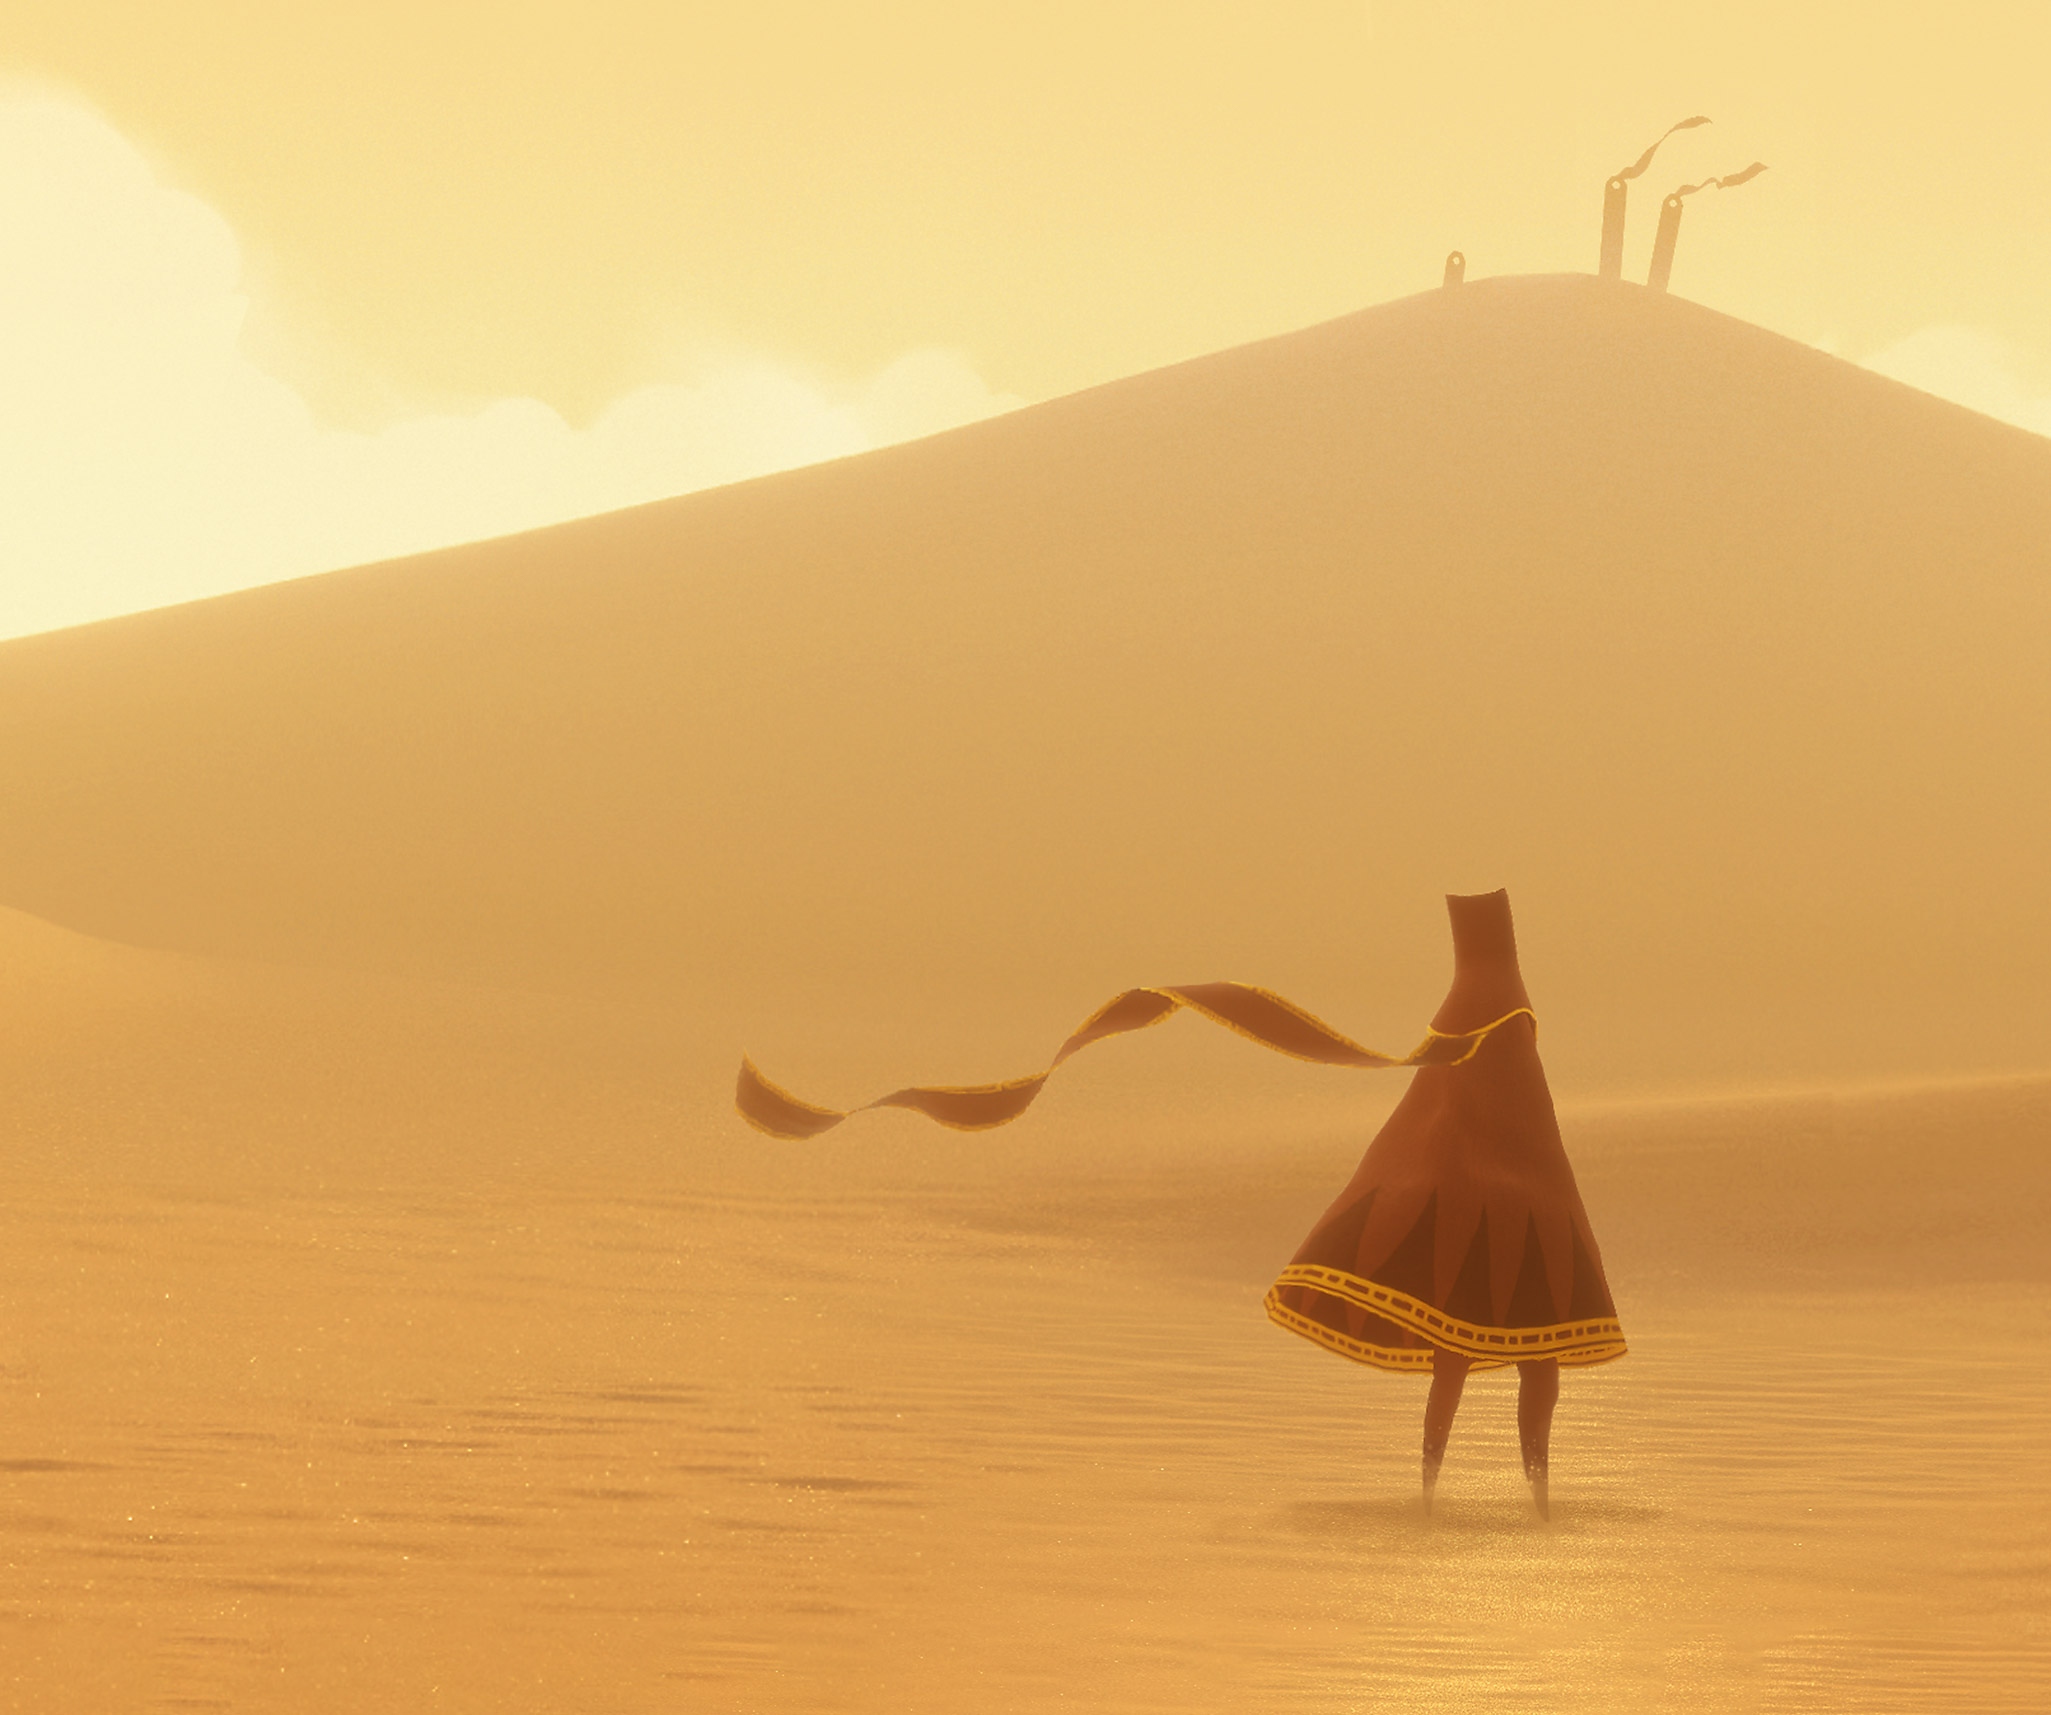 Journey - Illustration du Voyageur, le personnage principal, se tenant dans un vaste désert.